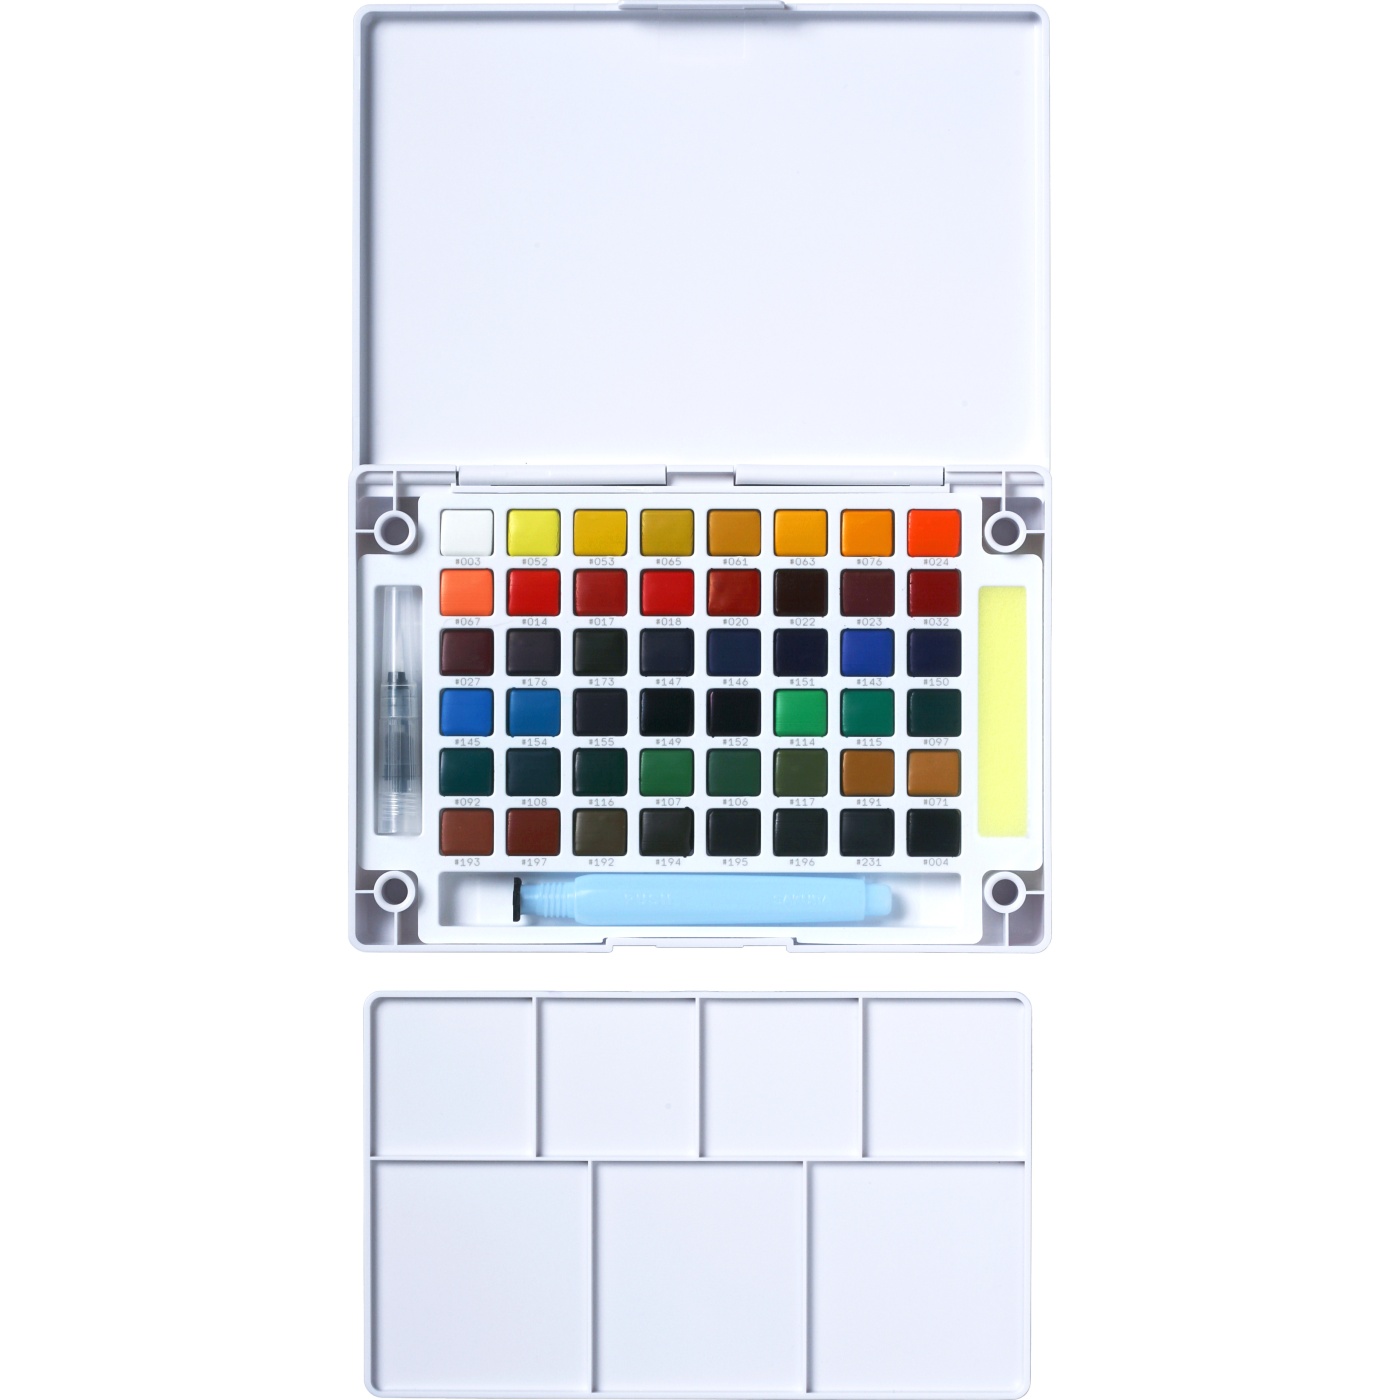 Koi Water Colors Sketch Box 48 i gruppen Kunstnerartikler / Farver / Akvarelfarver hos Pen Store (103506)